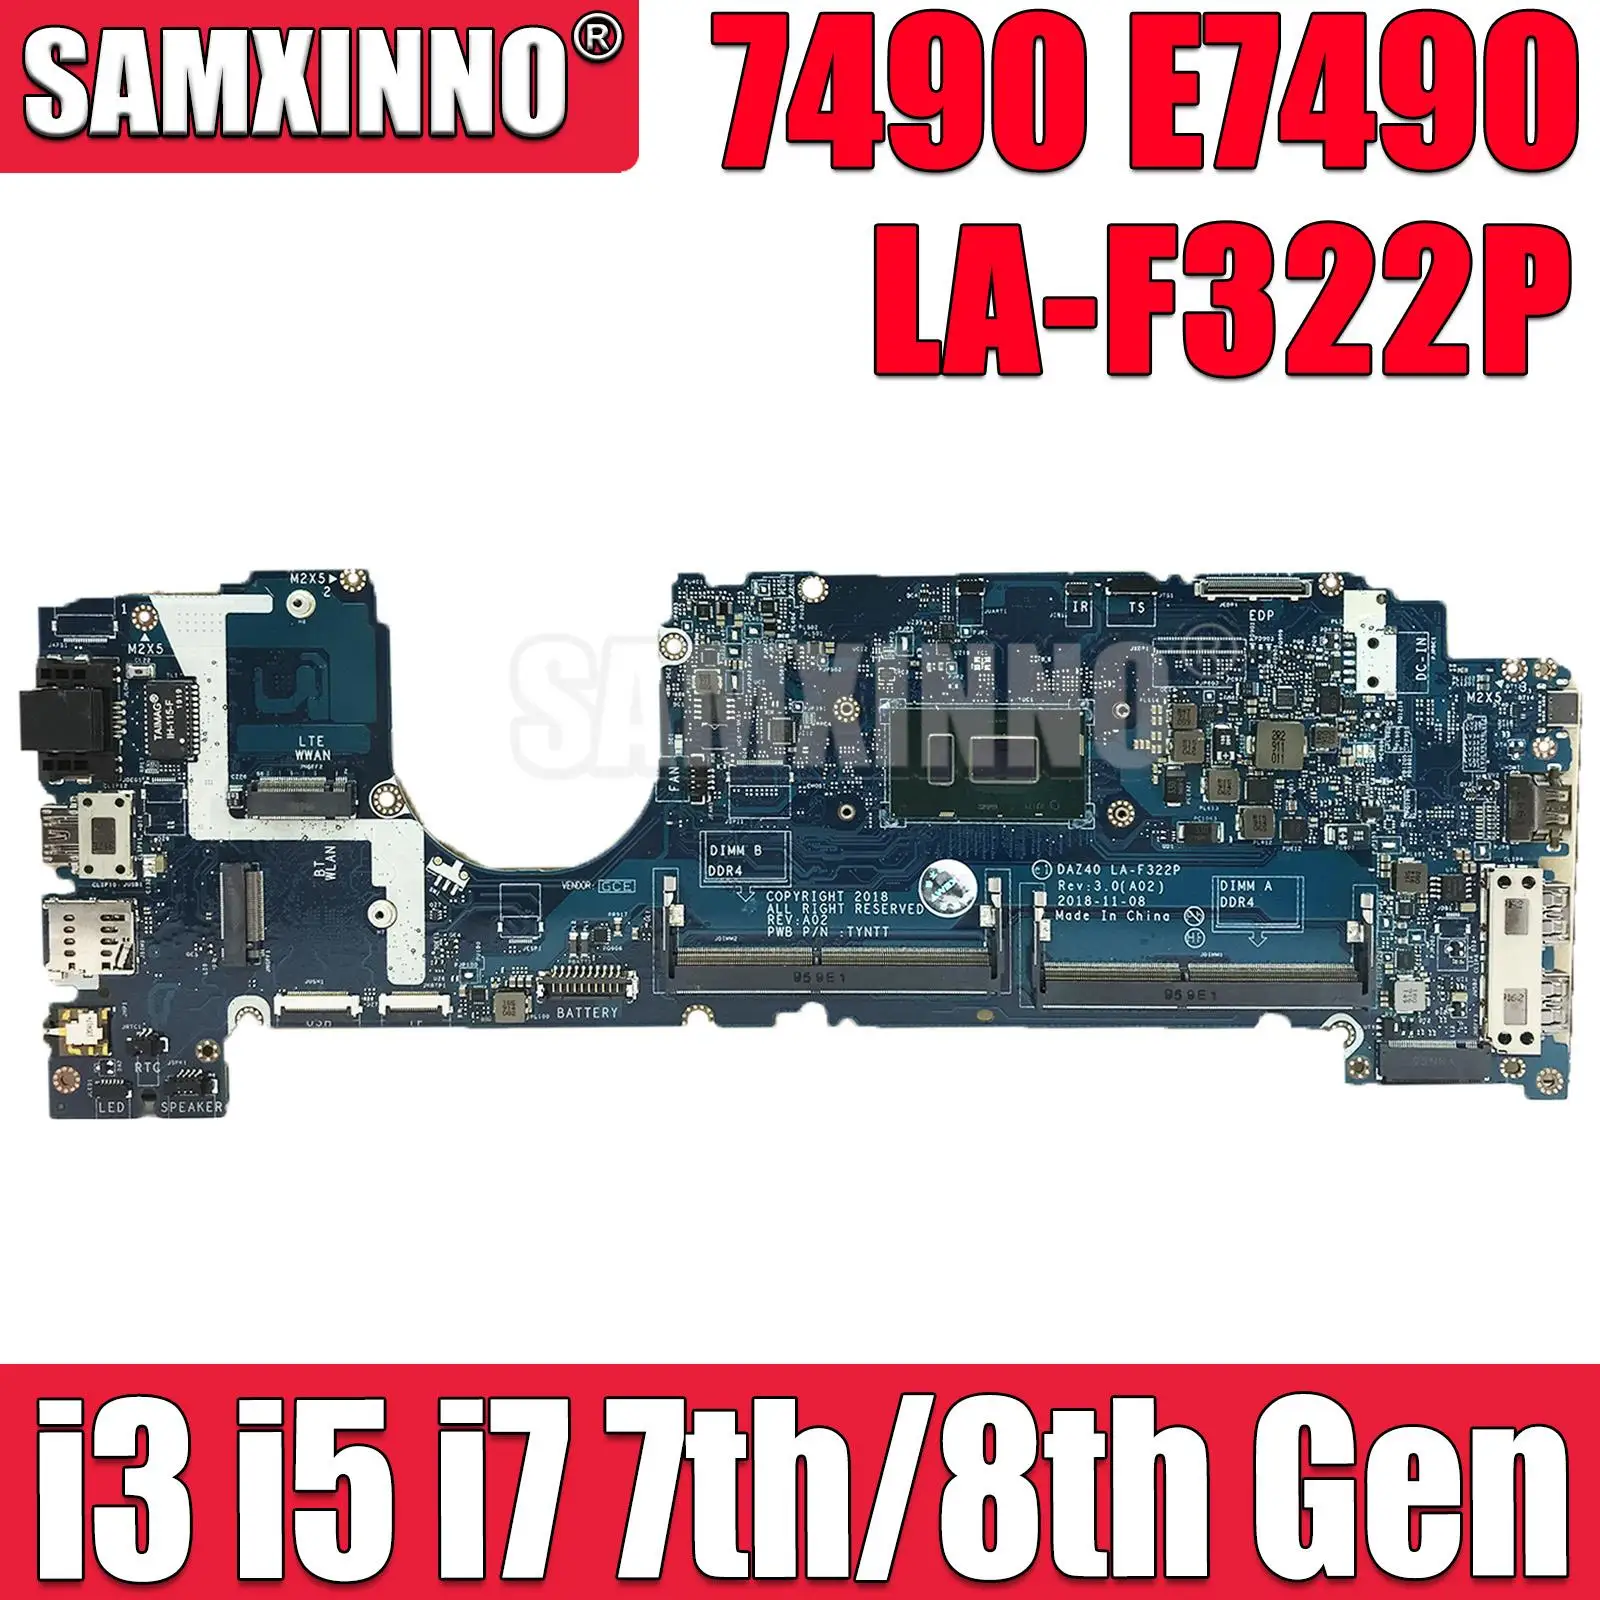 

For DELL Latitude 7490 E7490 Laptop Motherboard DAZ40 LA-F322P With i3 i5 i7 7th/8th Gen CPU CN-02YNVK 0KGYDF 0CWDR5 0PXMYG